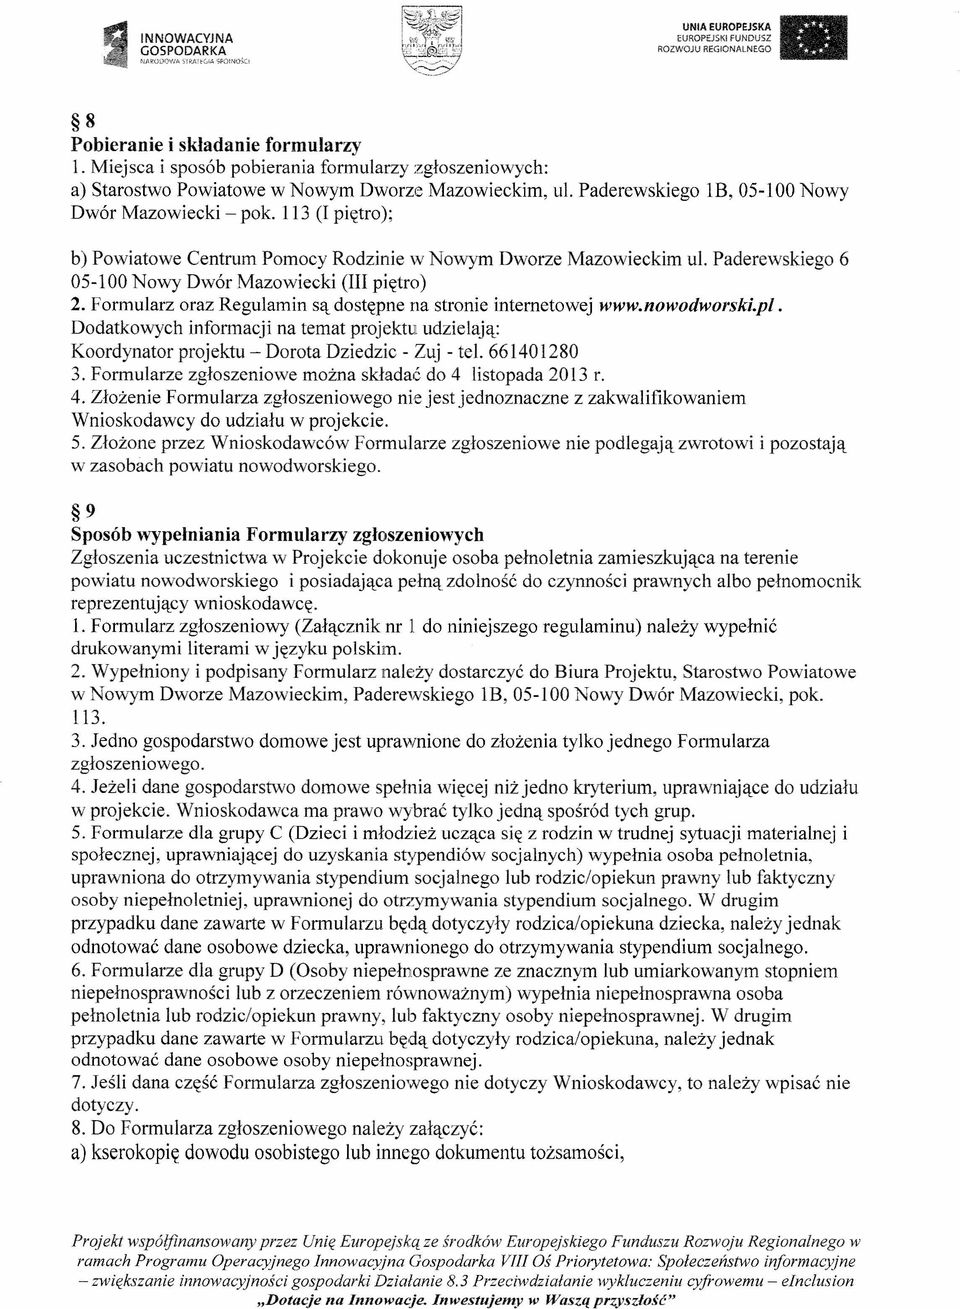 Formularz oraz Regulamin są dostępne na stronie internetowej www.nowodworski.pl. Dodatkowych informacji na temat projektu udzielają: Koordynator projektu - Dorota Dziedzic - Zuj - tel. 661401280 3.